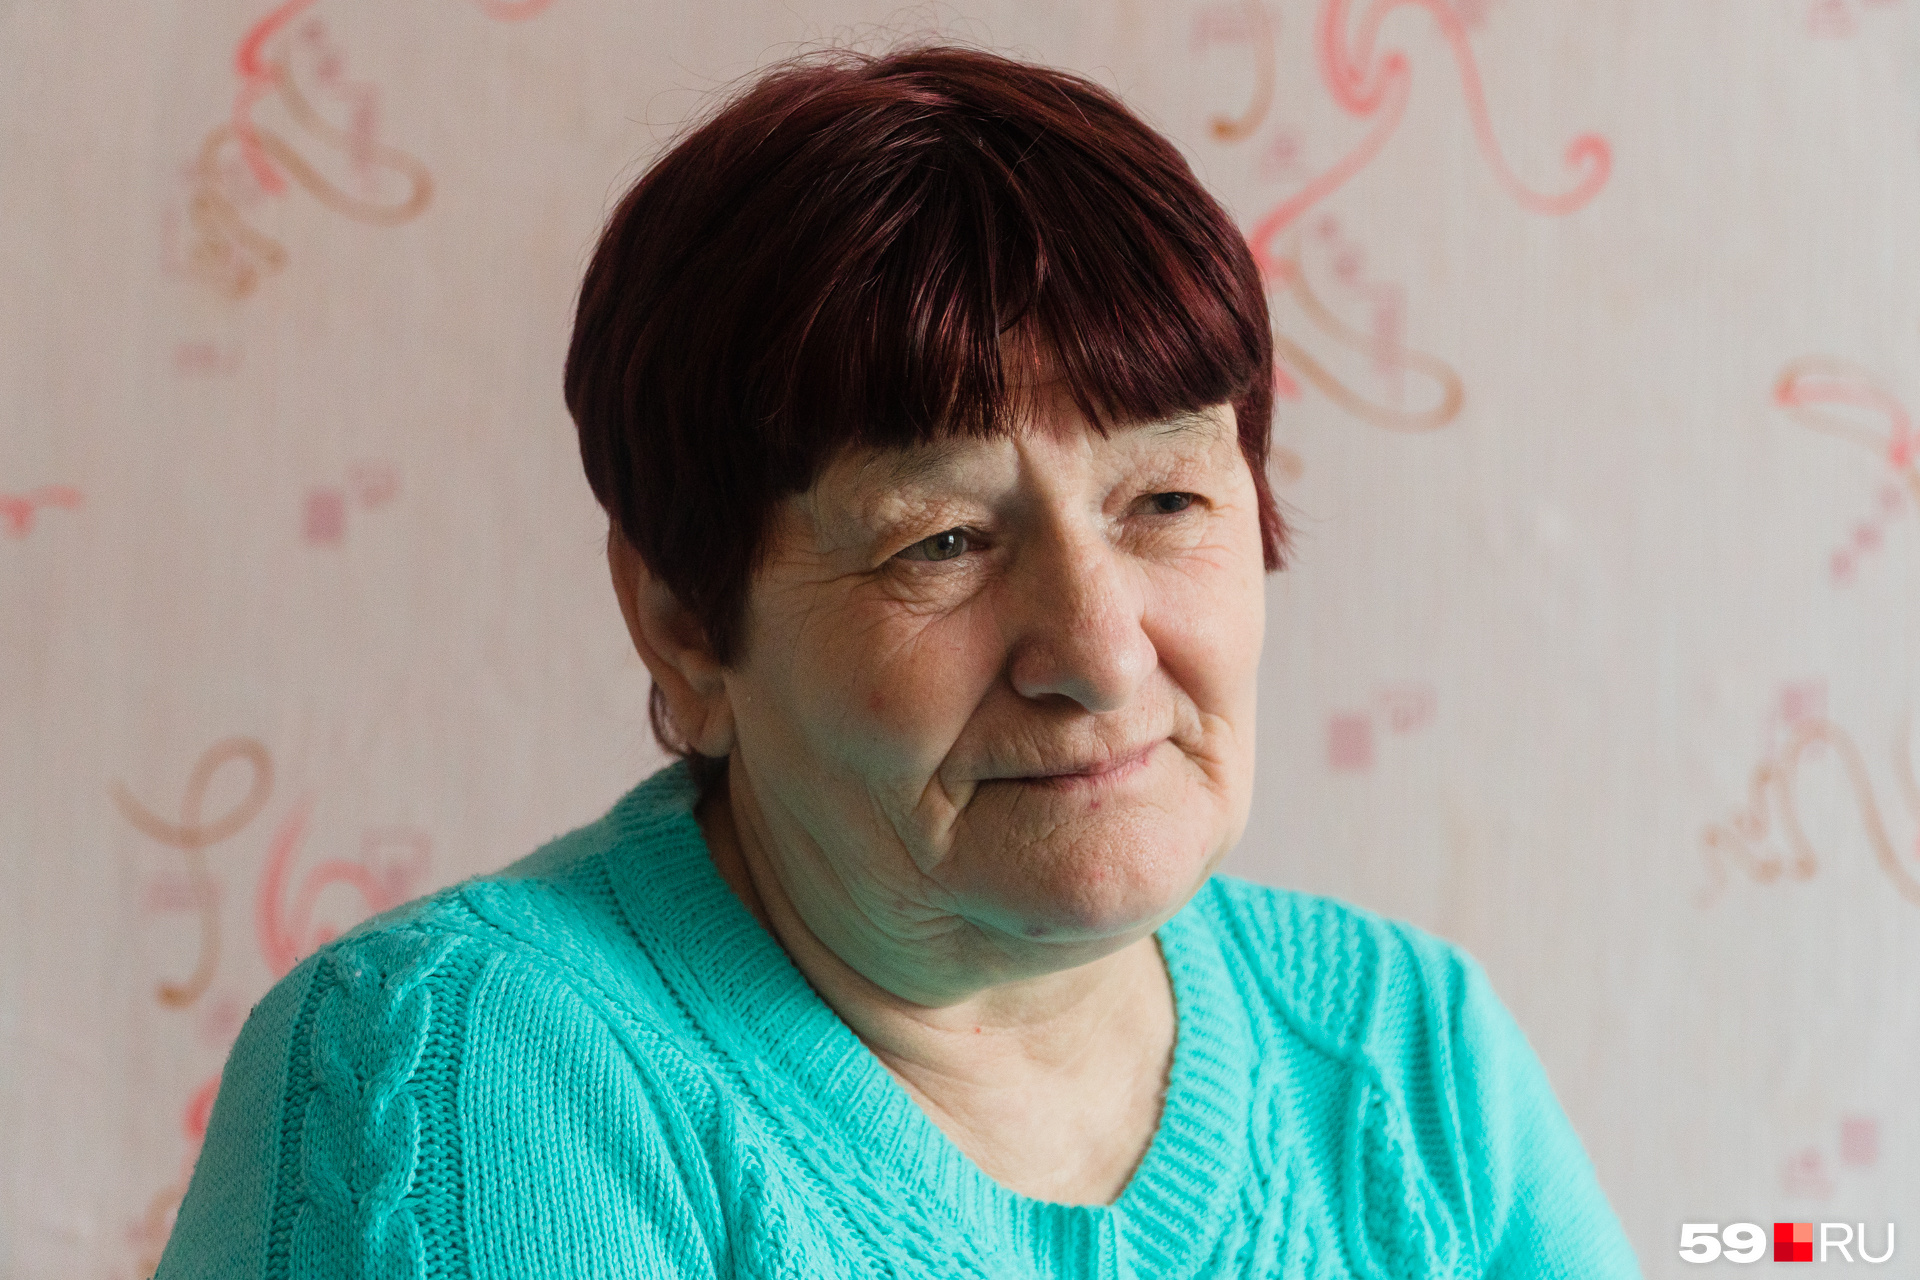 Ольге Друговой 60 лет. Последние семь лет она провела в колонии общего режима